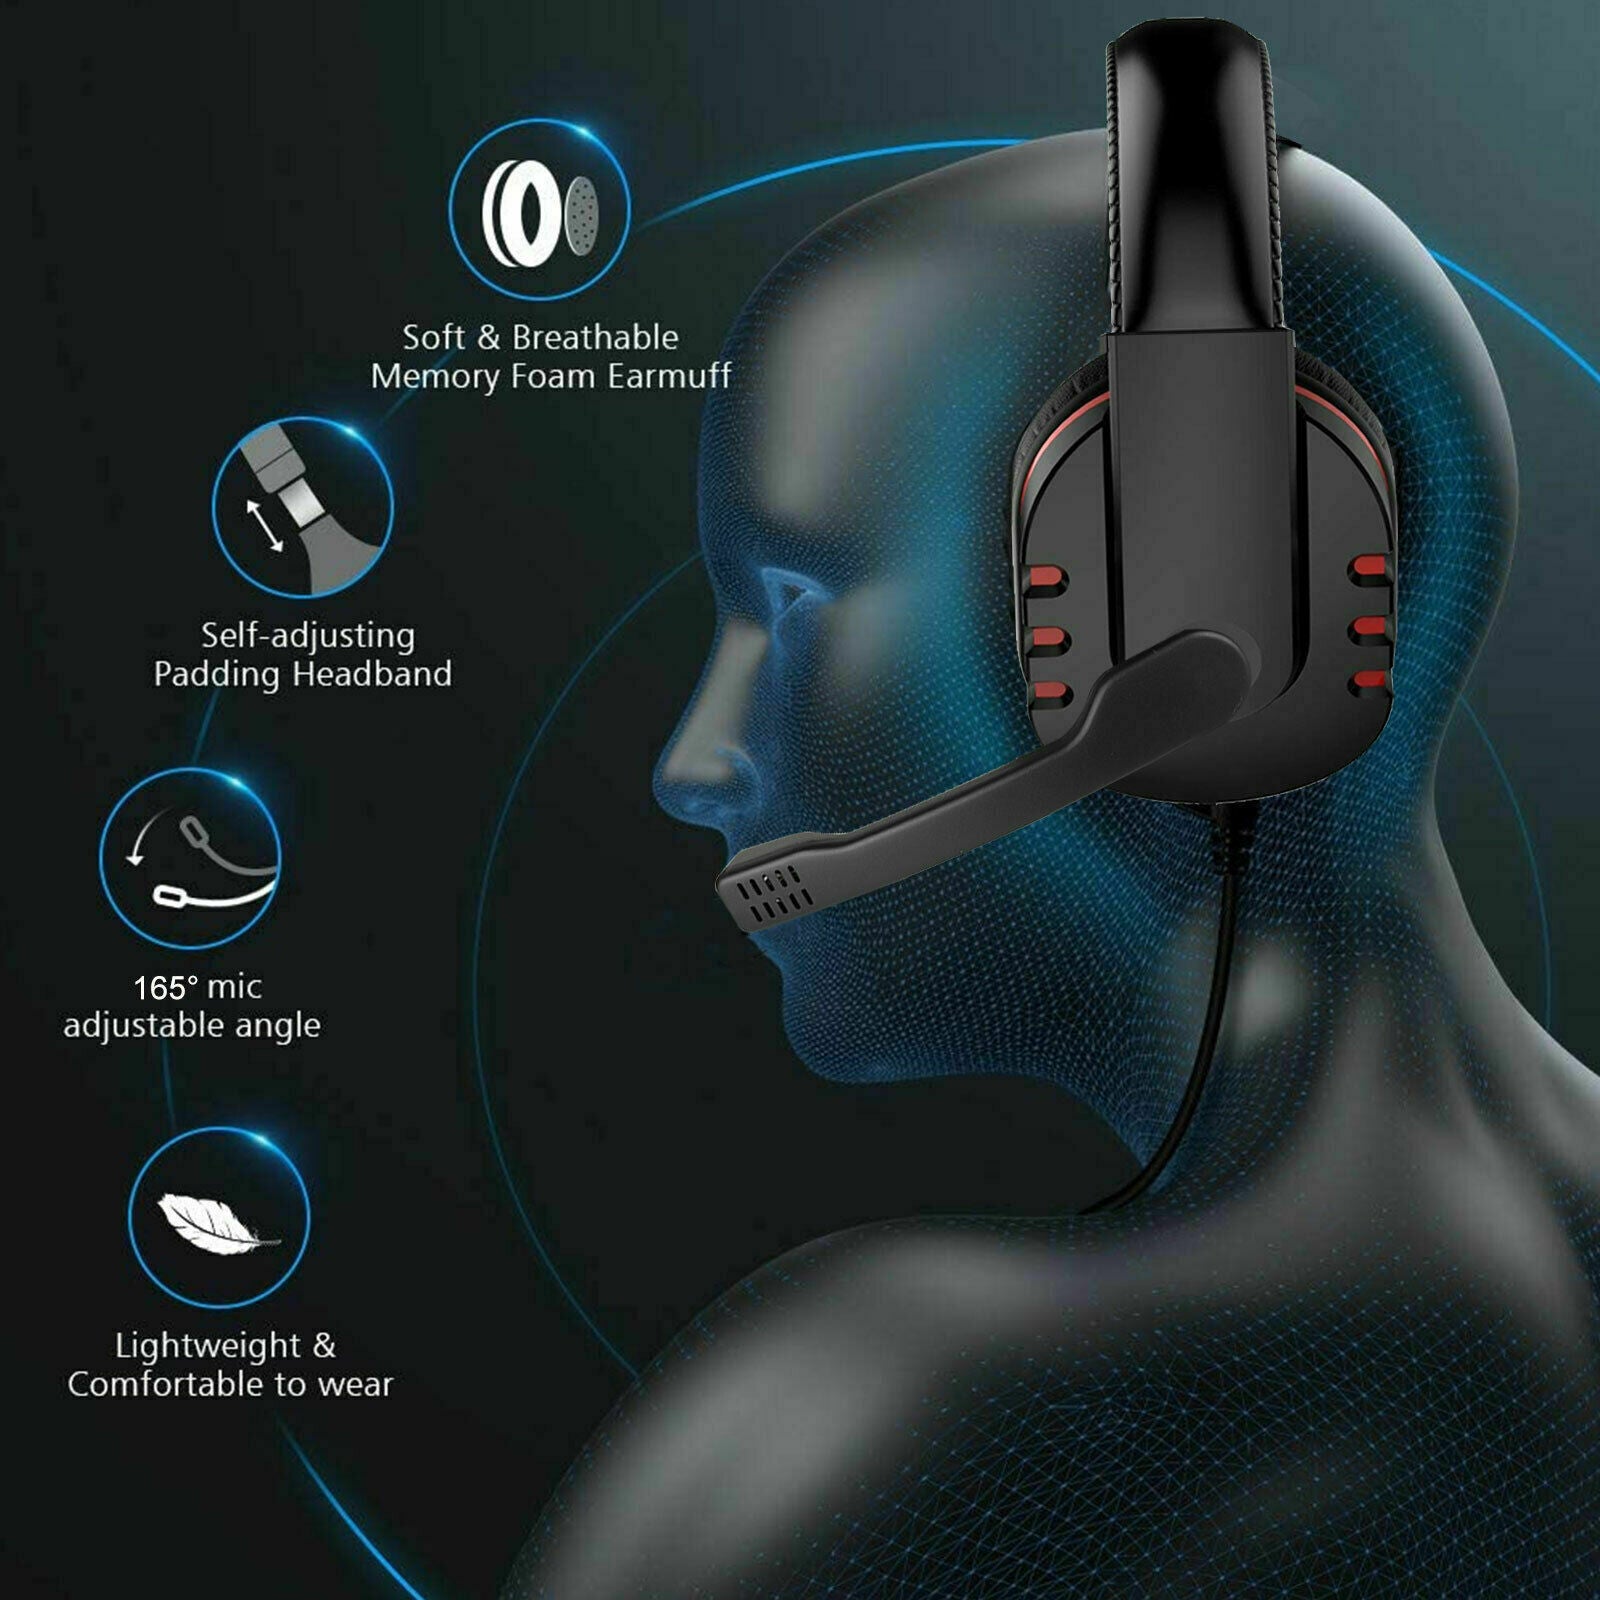 Headphones Pro Gamer Headset for PS4 PlayStation 4 - Bargains4PenniesHeadphones Pro Gamer Headset for PS4 PlayStation 4Bargains4Pennies